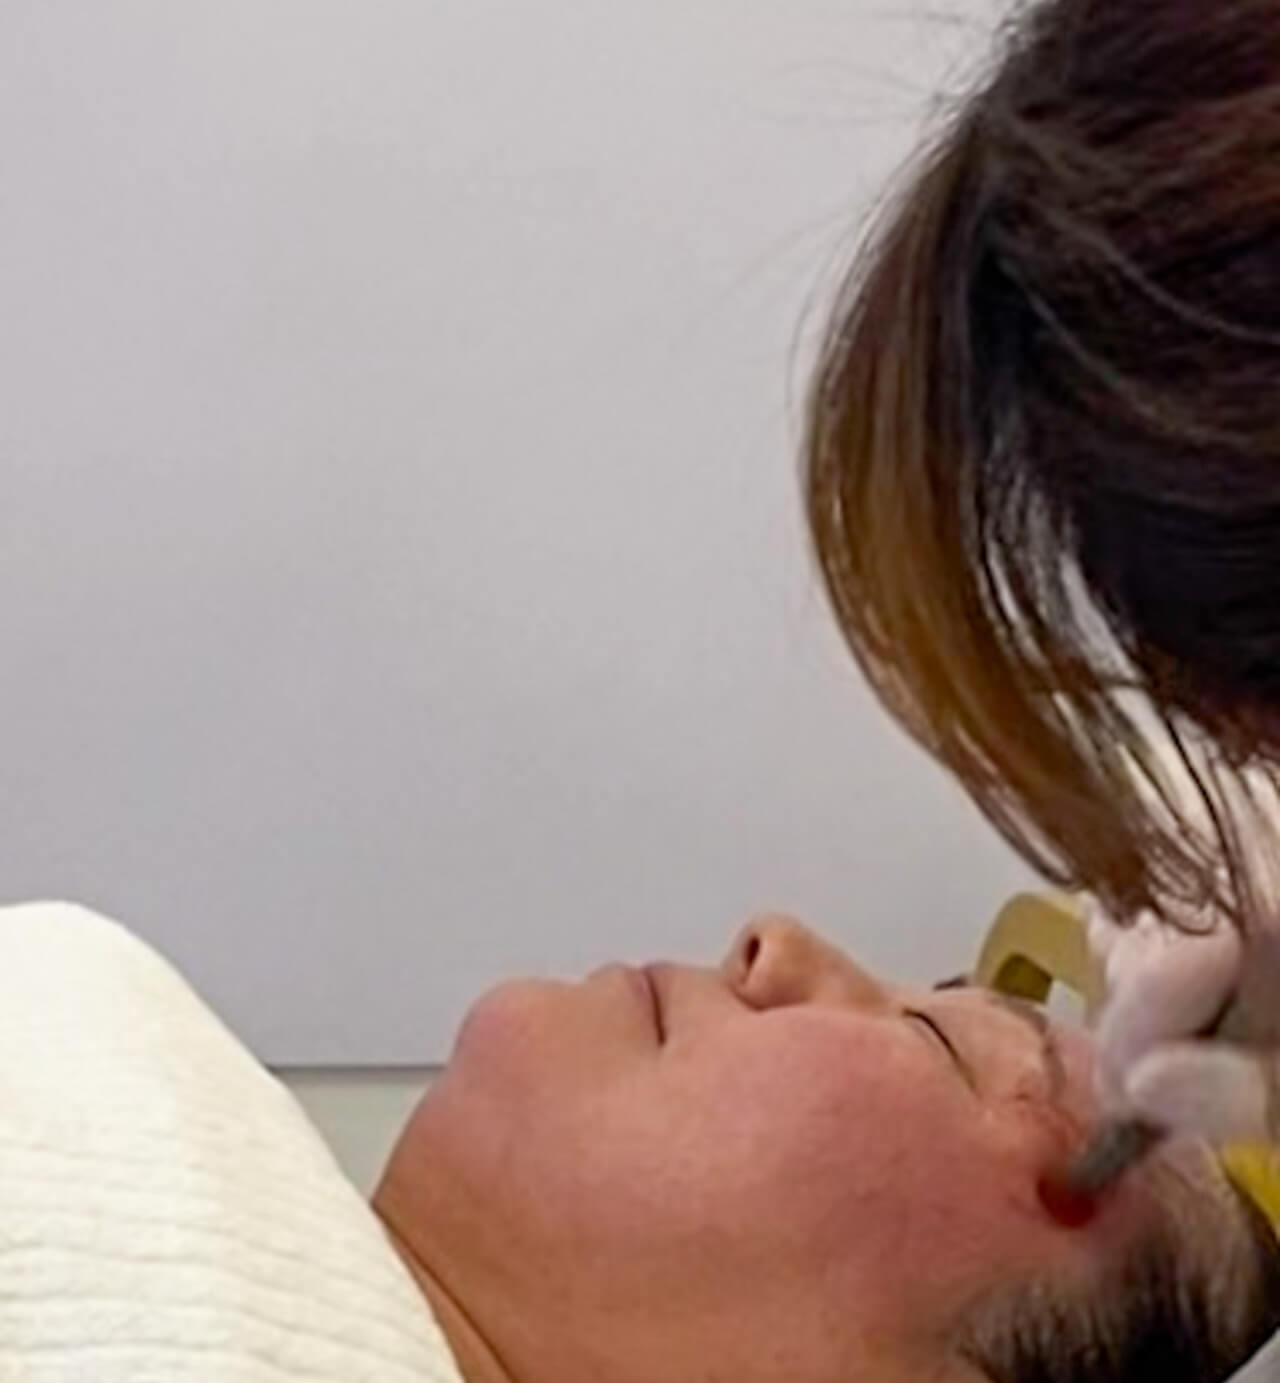 skin treatments in seoul | microneedling